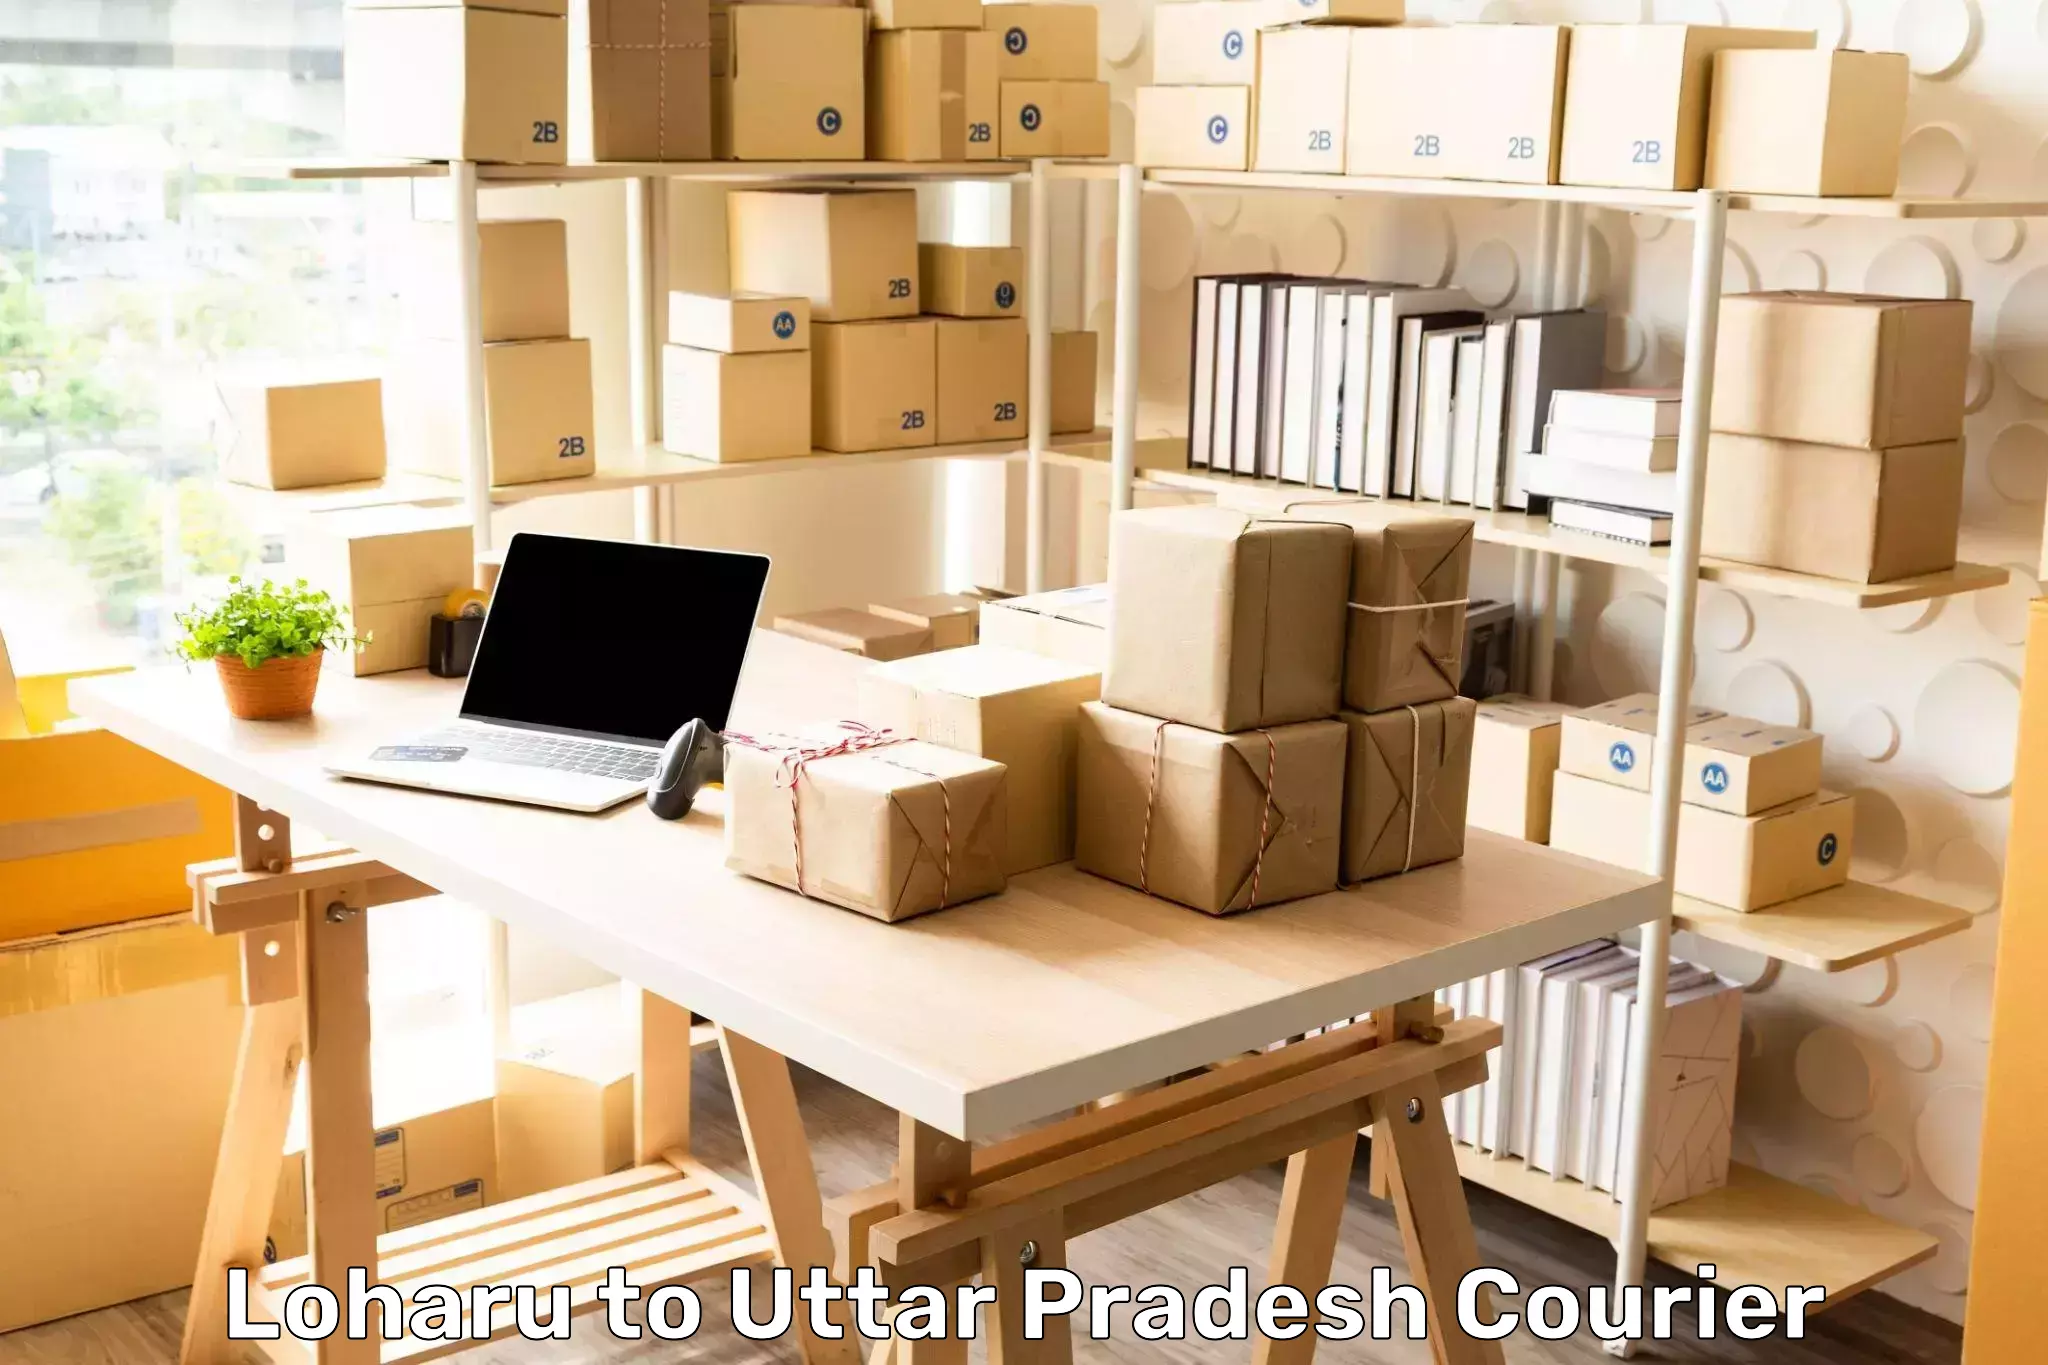 Efficient cargo services Loharu to Uttar Pradesh